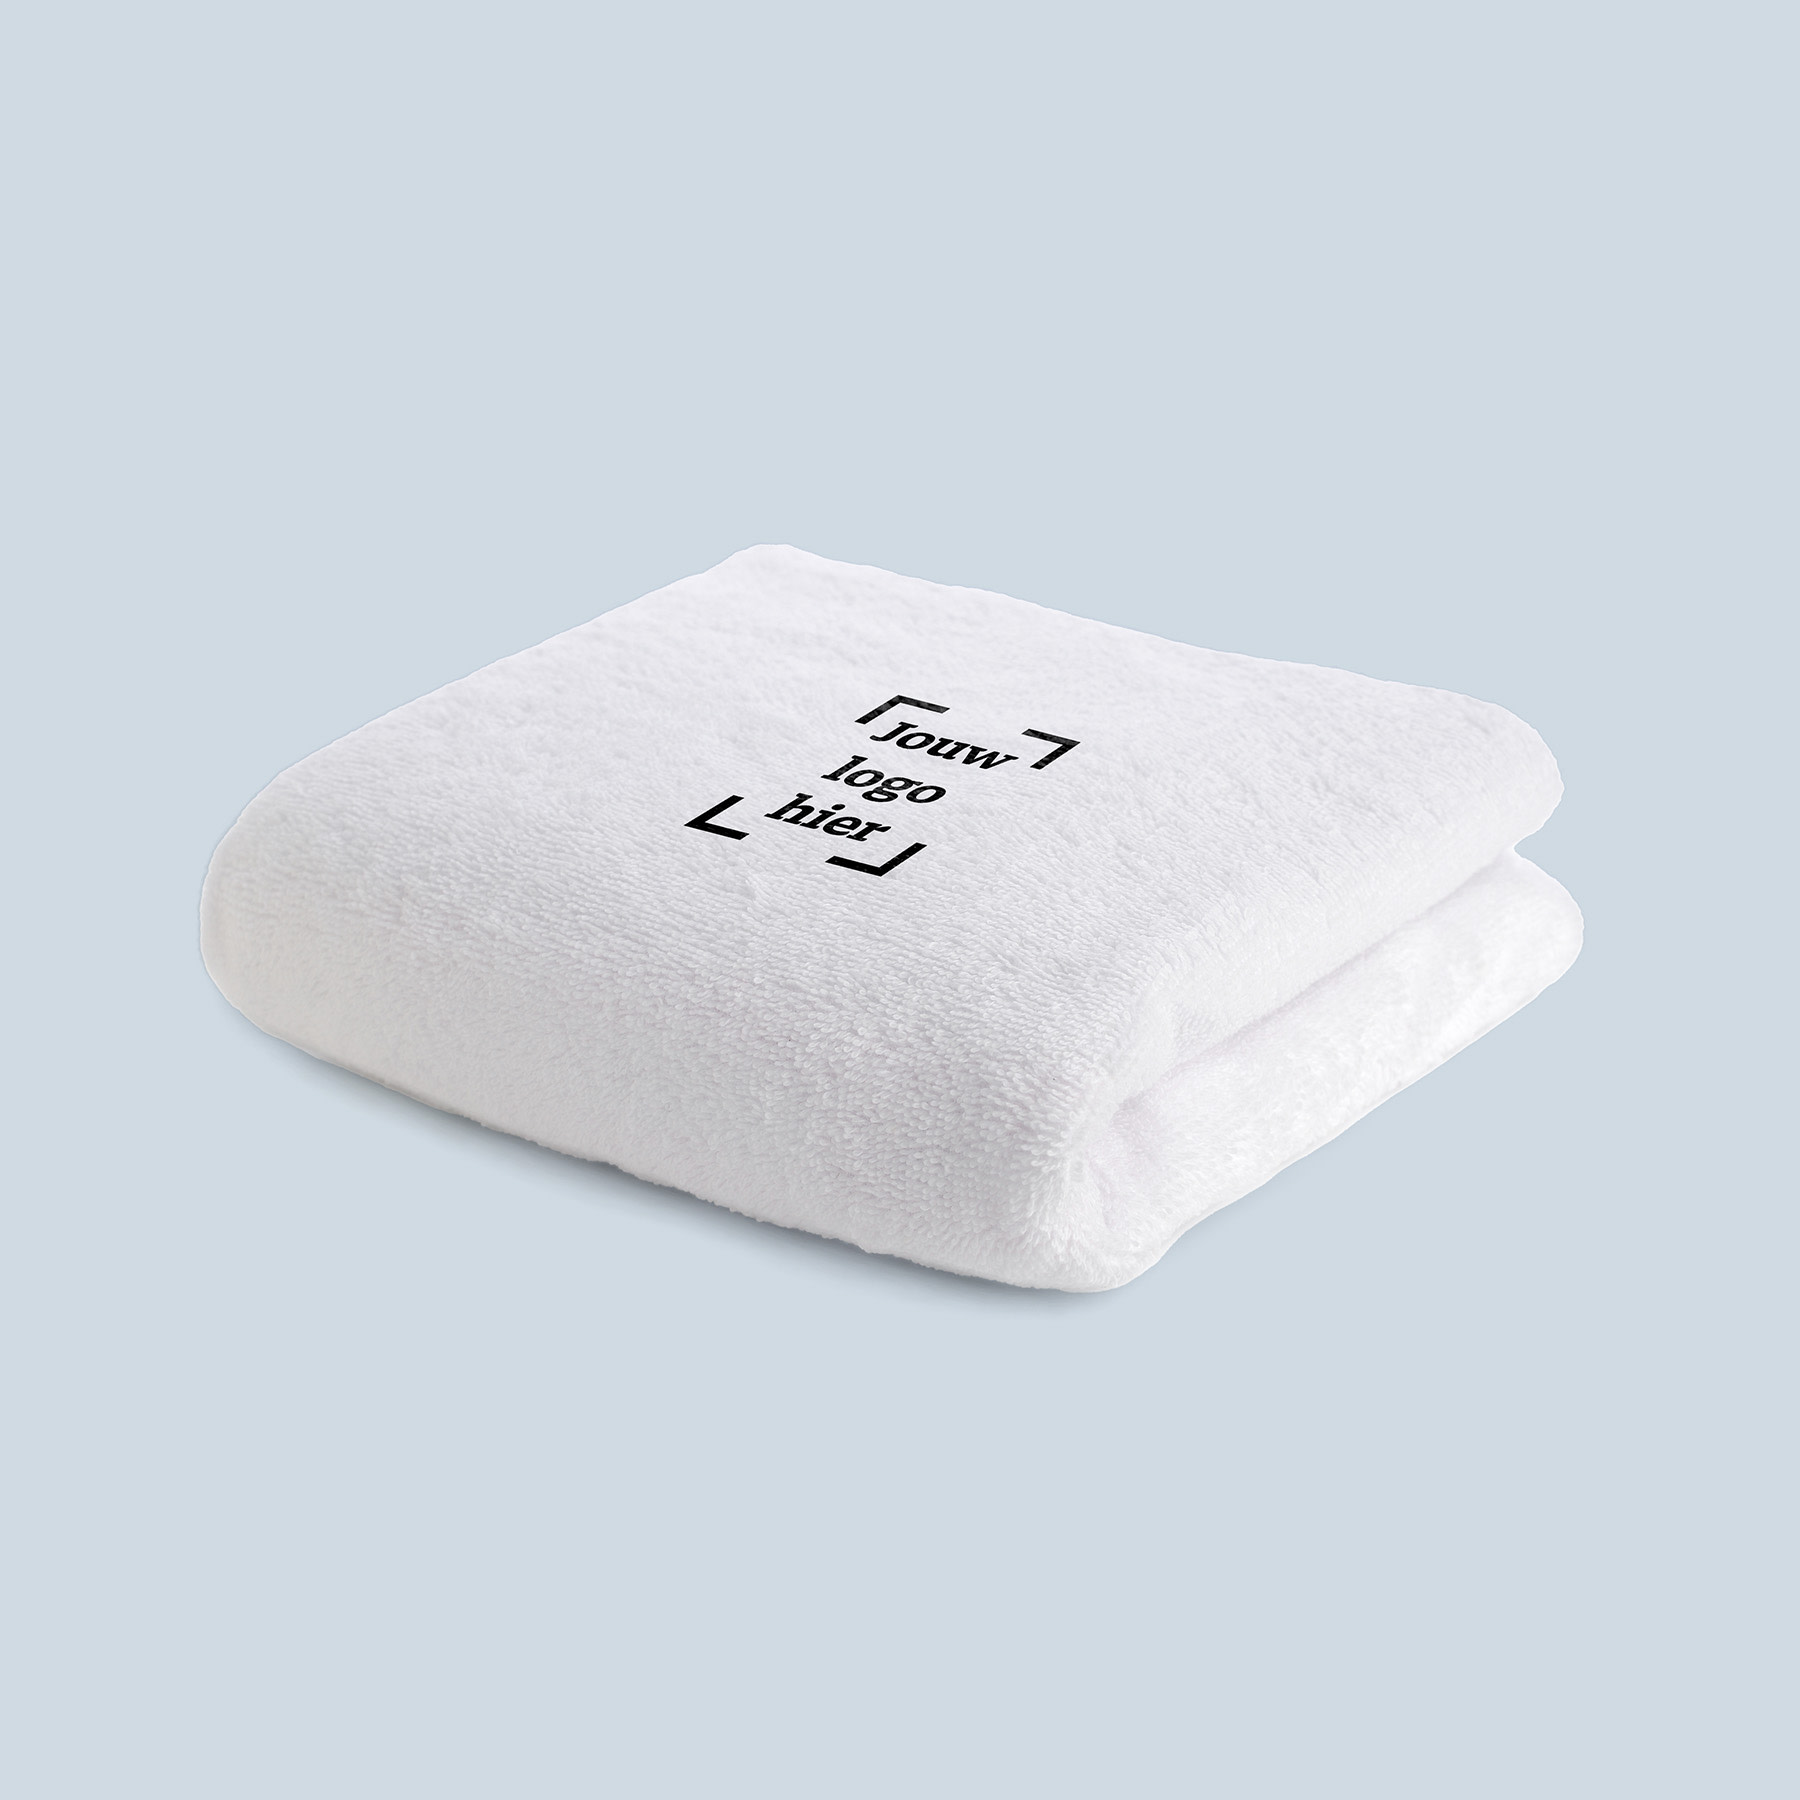 productbeelden je-merk-binnen-handbereik handdoek